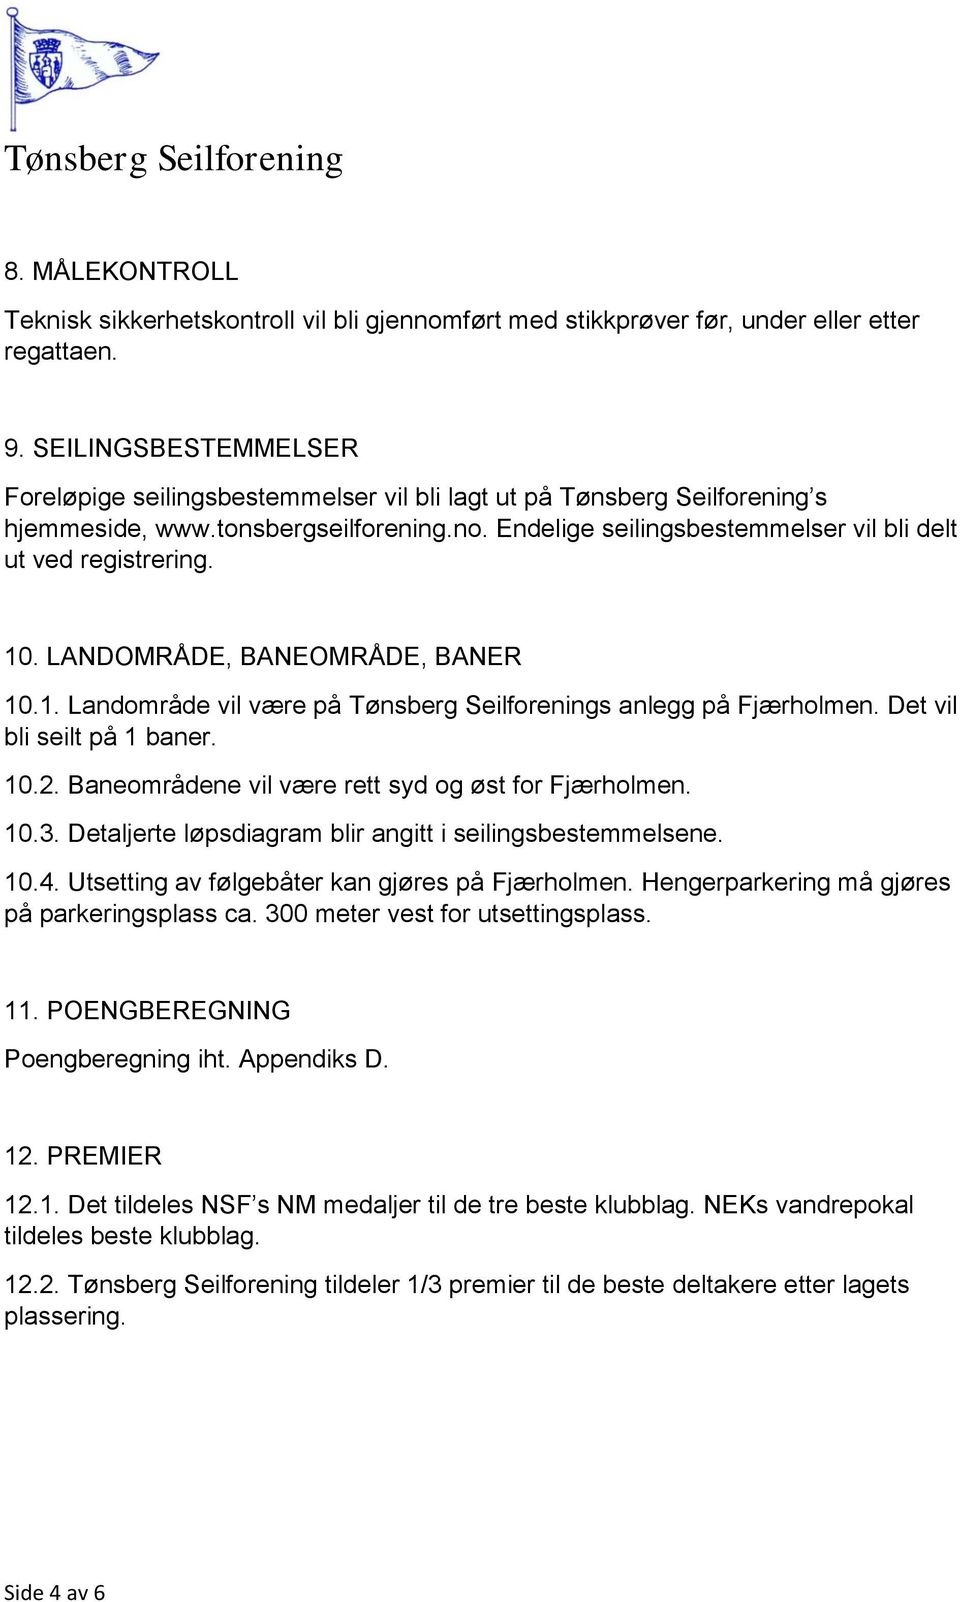 10. LANDOMRÅDE, BANEOMRÅDE, BANER 10.1. Landområde vil være på Tønsberg Seilforenings anlegg på Fjærholmen. Det vil bli seilt på 1 baner. 10.2. Baneområdene vil være rett syd og øst for Fjærholmen.